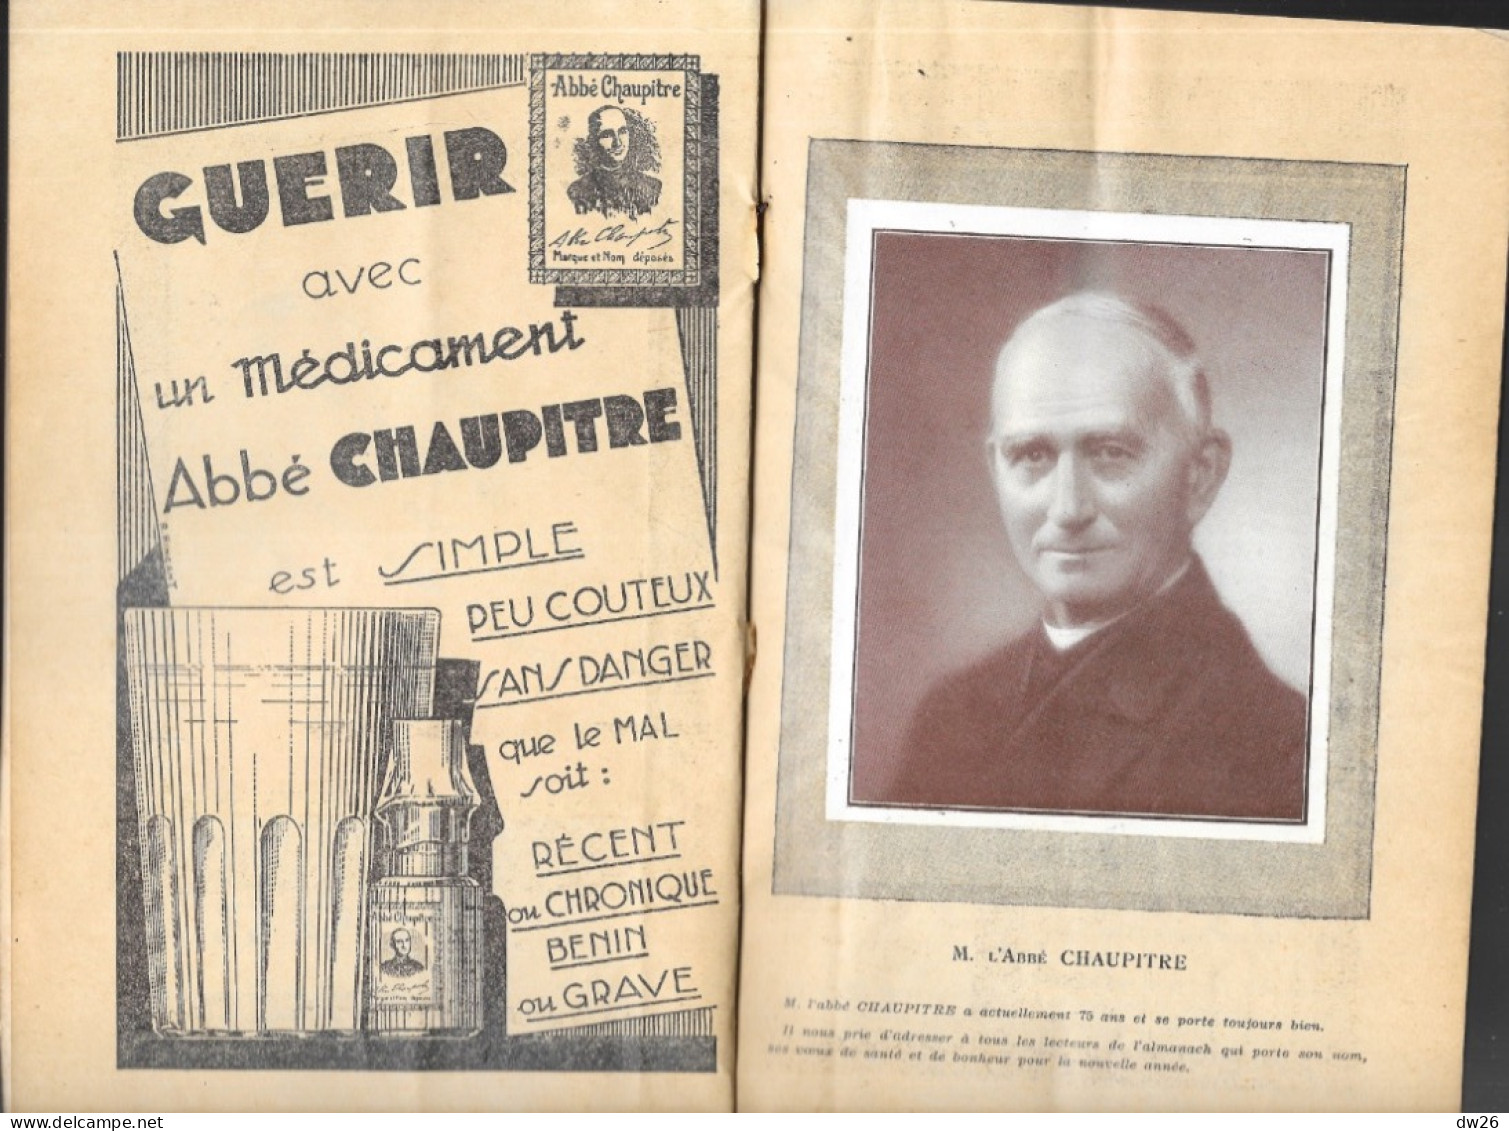 Almanach Abbé Chaupitre 1934 à L'Usage Des Bien Portants Et Des Malades - Conseils Soins, Hygiène, Recettes - Salute